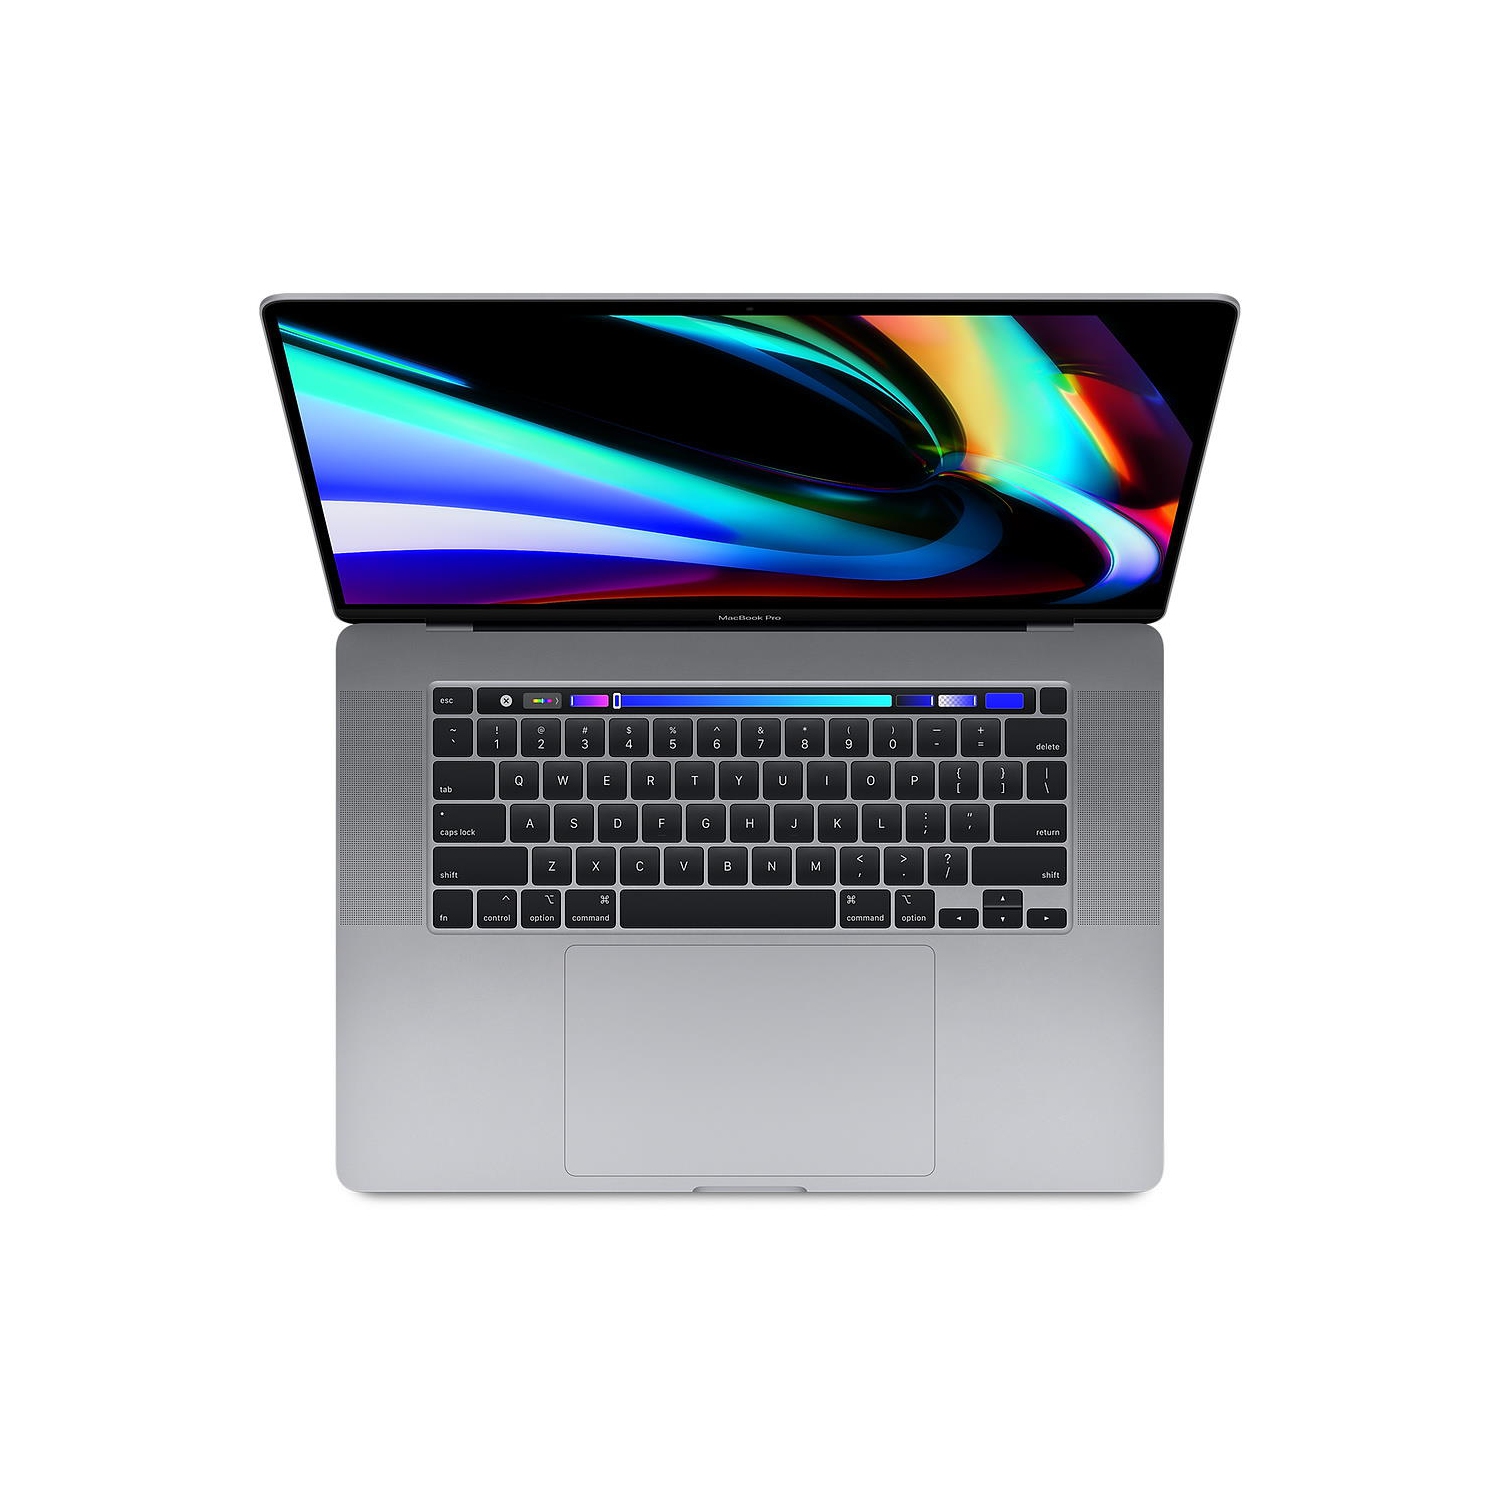 Open Box - Excellent) Macbook Pro 16 (DG, Space Gray, TB) 2.6Ghz 6 